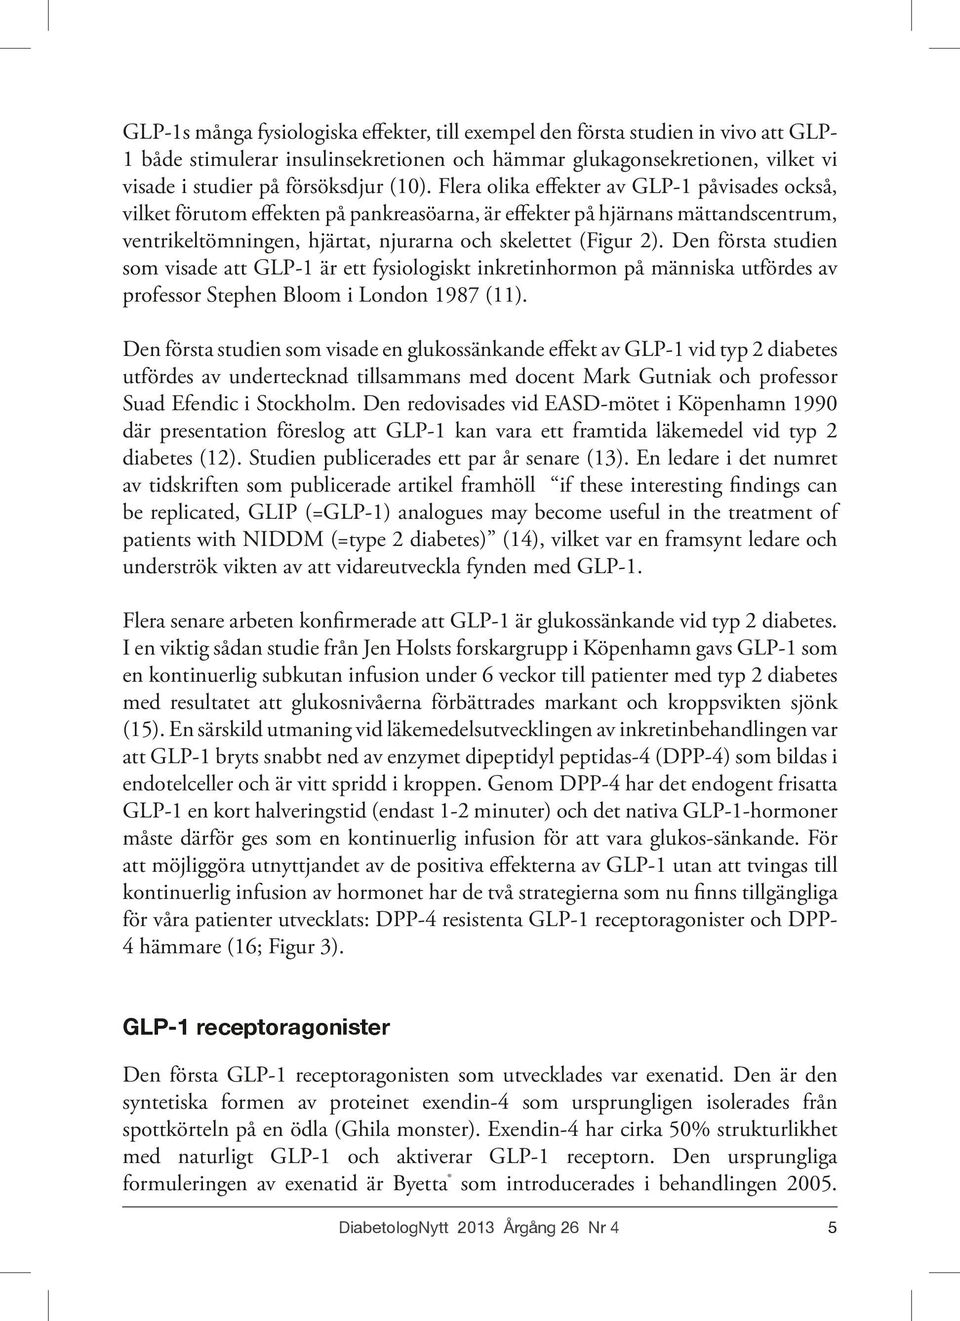 Den första studien som visade att GLP-1 är ett fysiologiskt inkretinhormon på människa utfördes av professor Stephen Bloom i London 1987 (11).